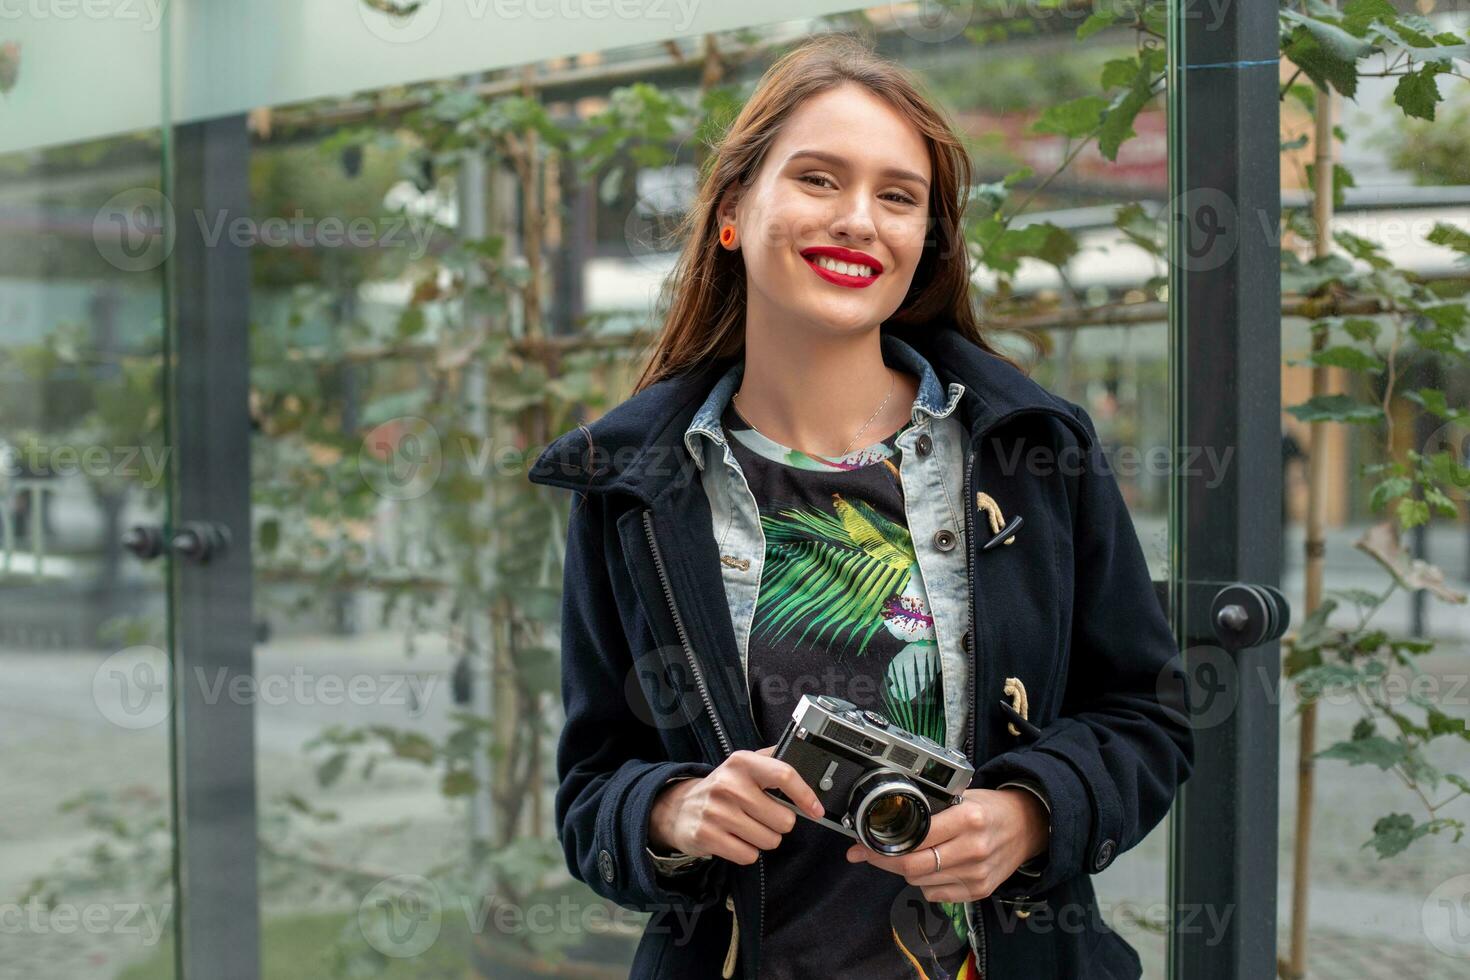 buitenshuis herfst glimlachen levensstijl portret van mooi jong vrouw, hebben pret in de stad met camera, reizen foto van fotograaf.